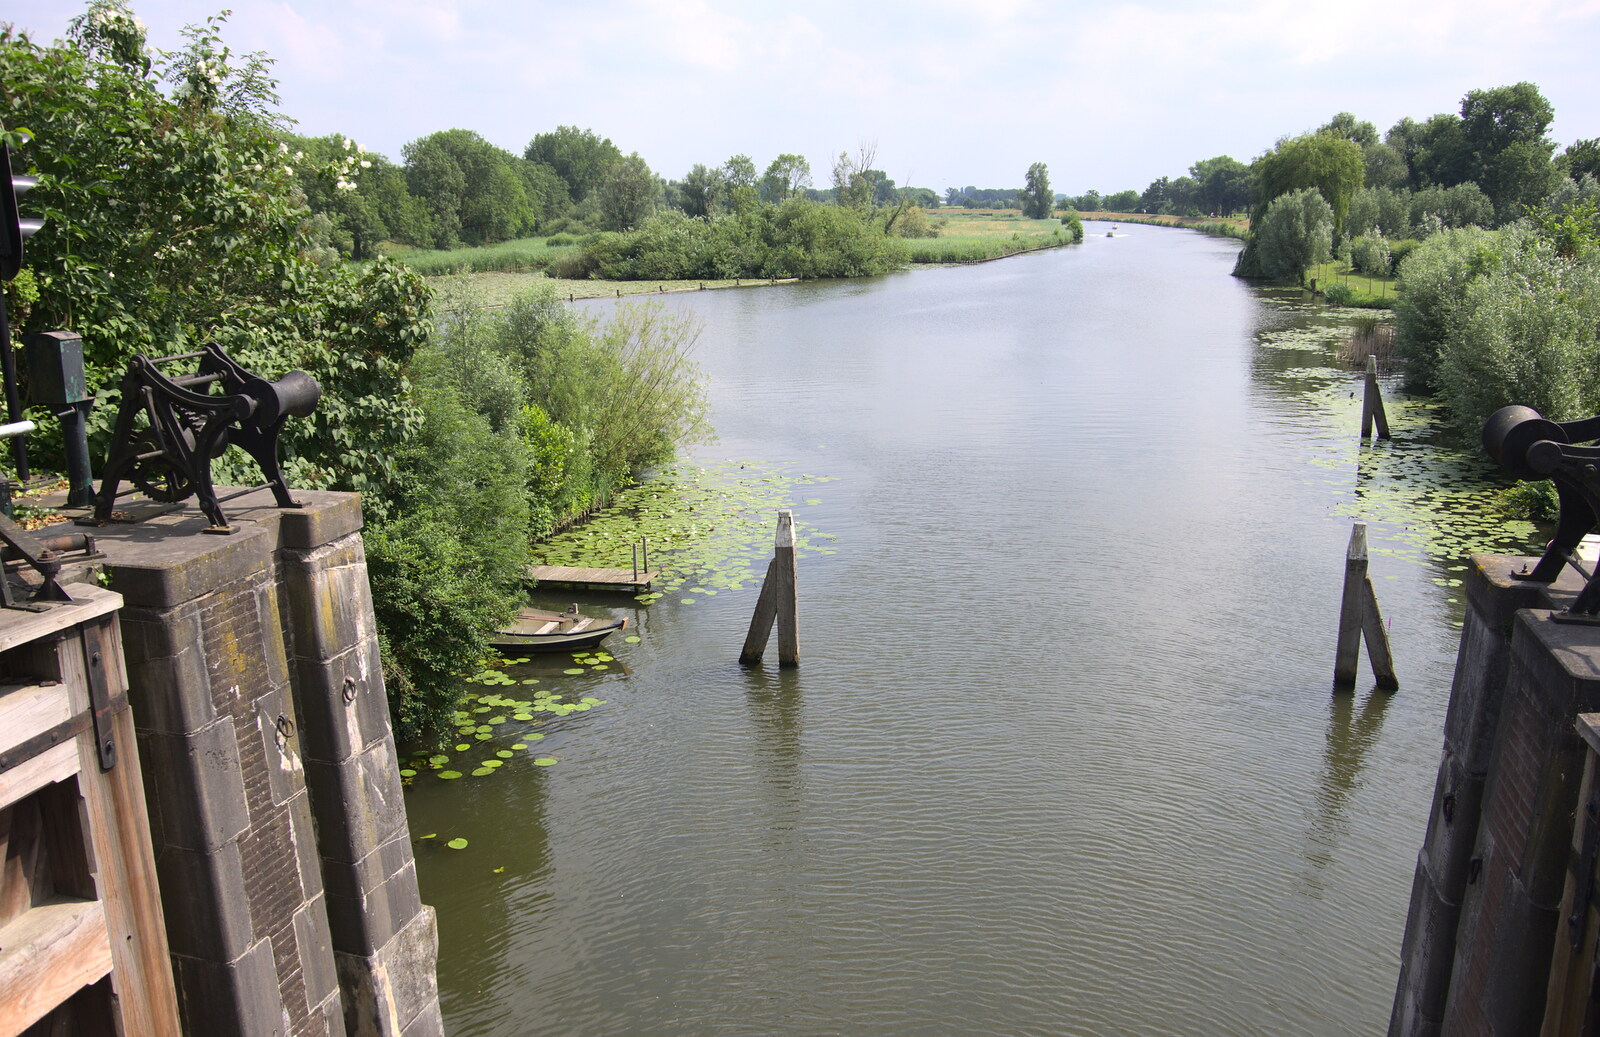 The River Linge from A Postcard From Asperen, Gelderland, Netherlands - 9th June 2018